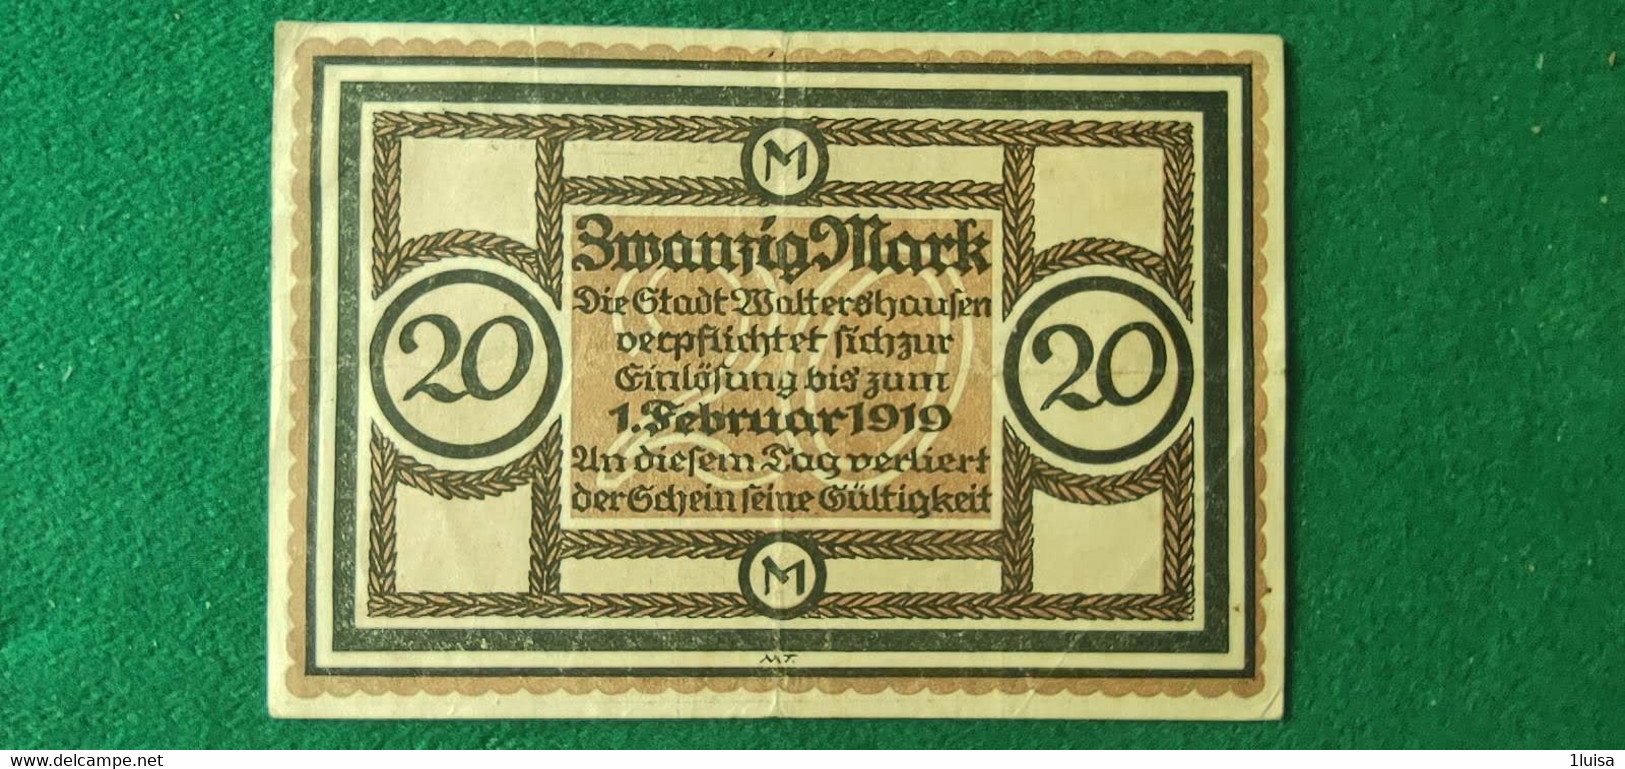 GERMANIA WALTERSHAUSEN 20 MARK 1918 - Mezclas - Billetes